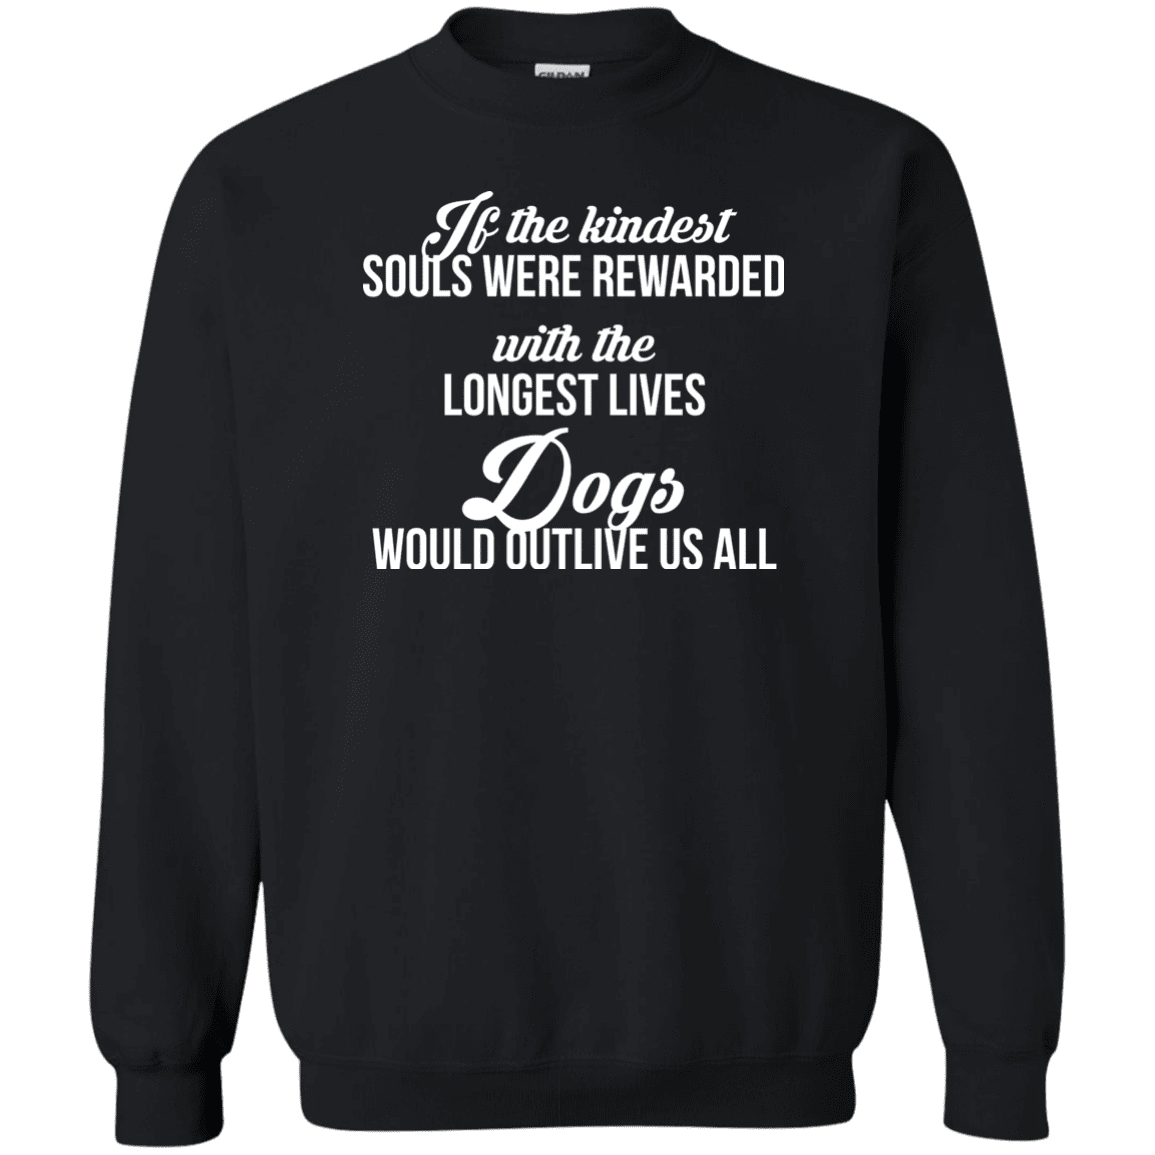 If The Kindest Souls - Sweatshirt.